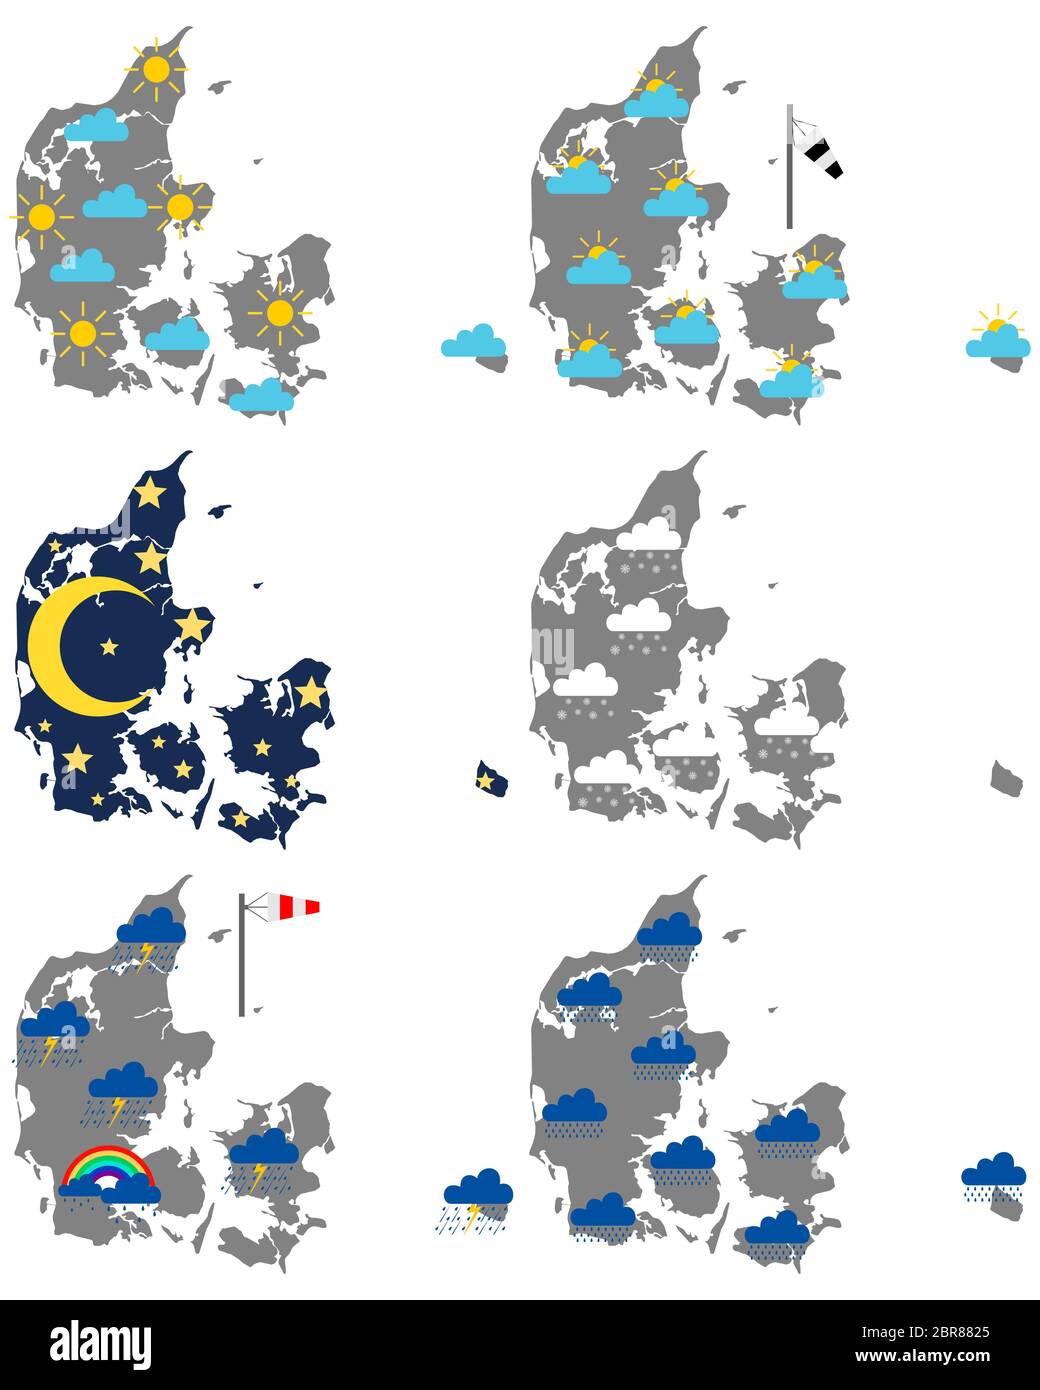 Karten von Dänemark mit verschiedenen Wettersymbolen Stock Photo